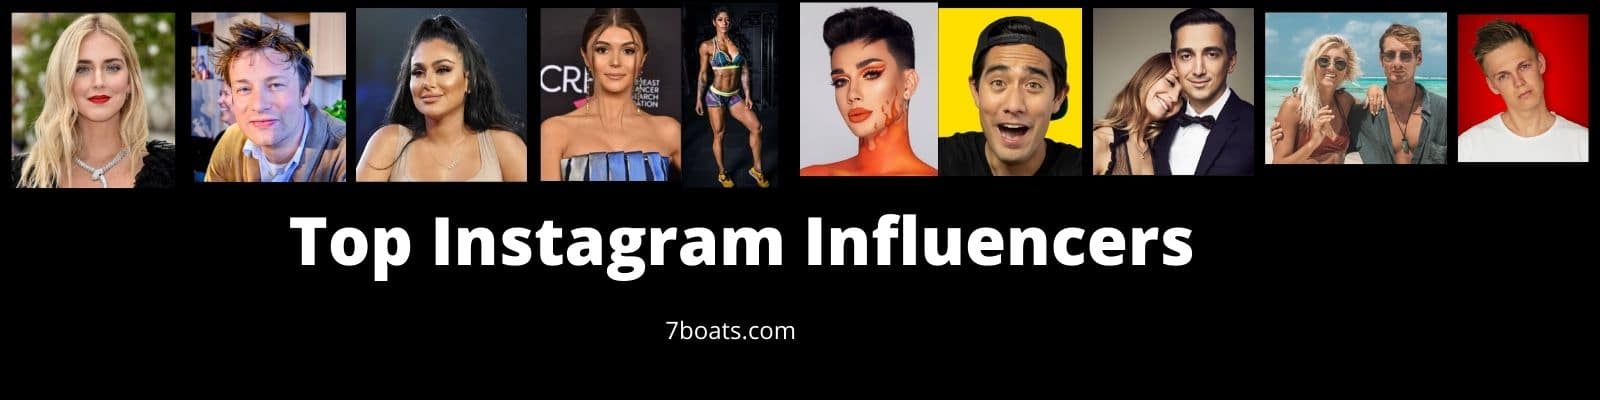 Top Instagram Influencers